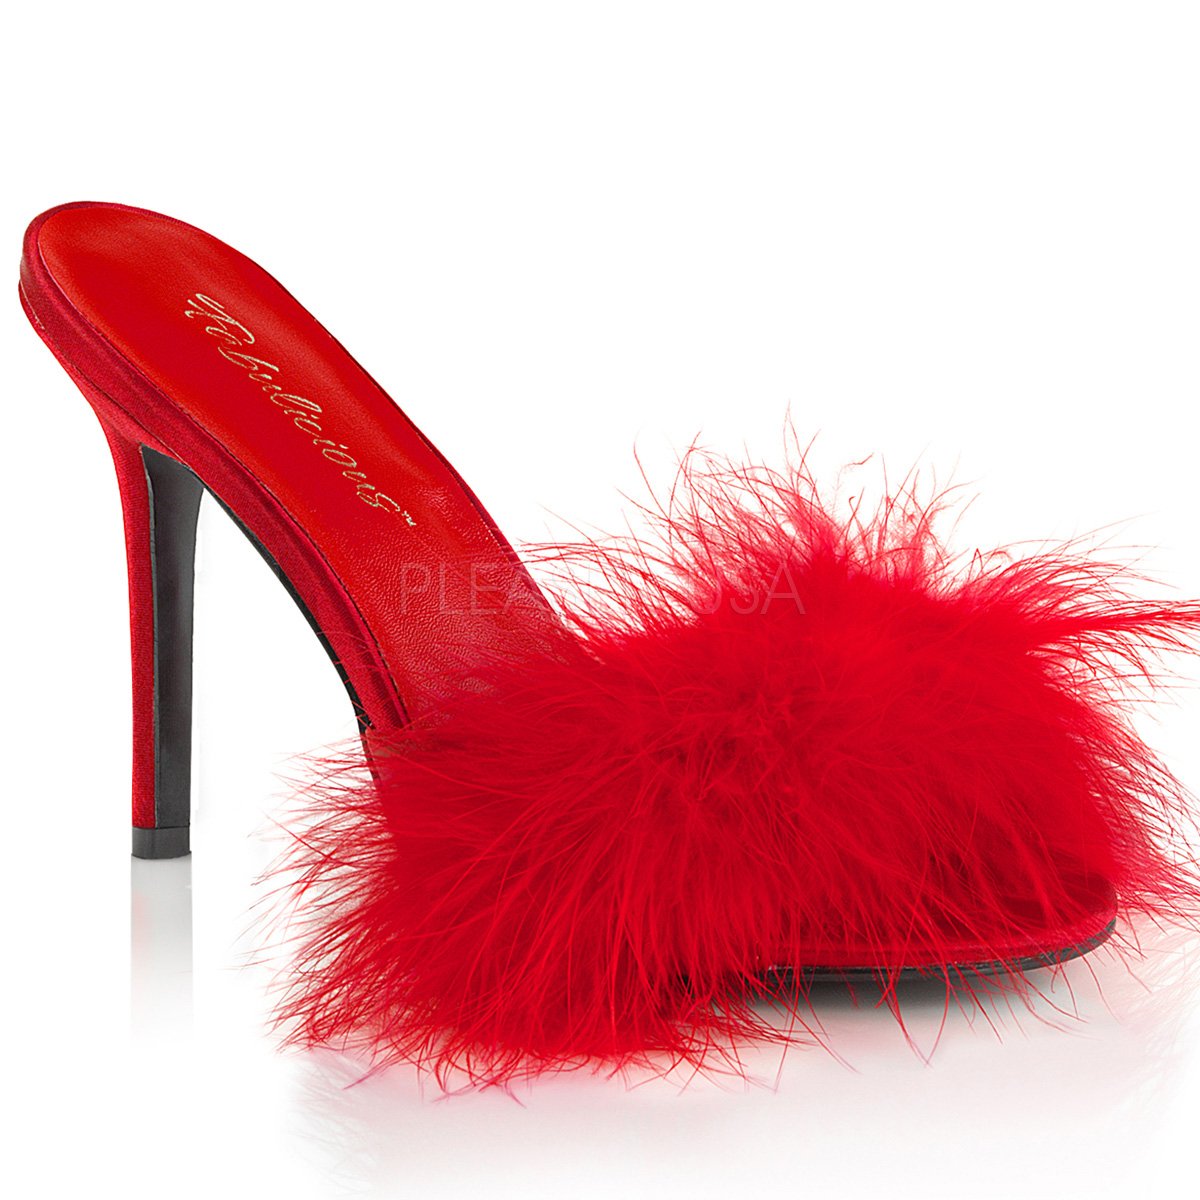 Red High Heels - Ankle Strap Heels - Platform Sandals - Heels - Lulus